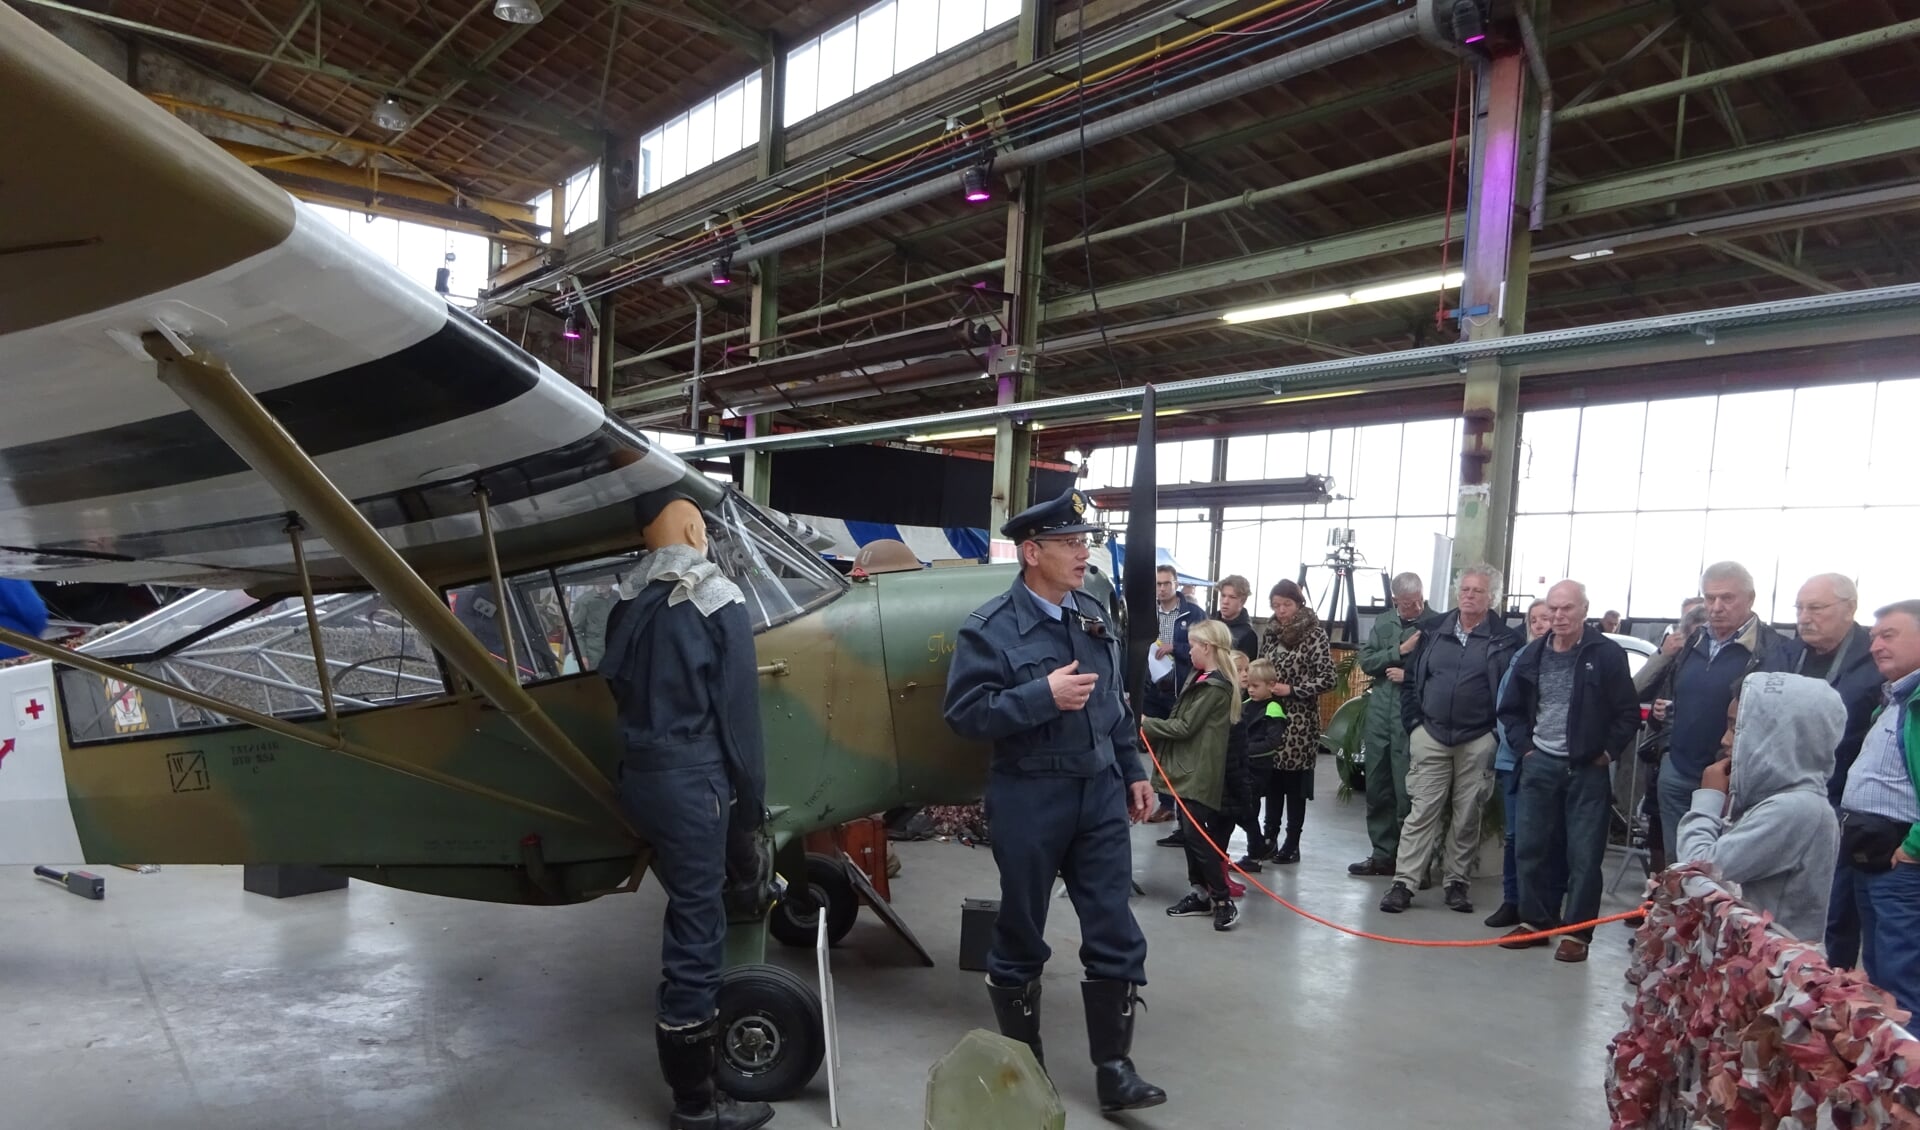 Bezoekers van War, Wings & Concrete krijgen uitleg over een oorlogsvliegtuig. FOTO MARIELJA TEN BRUGGENCATE